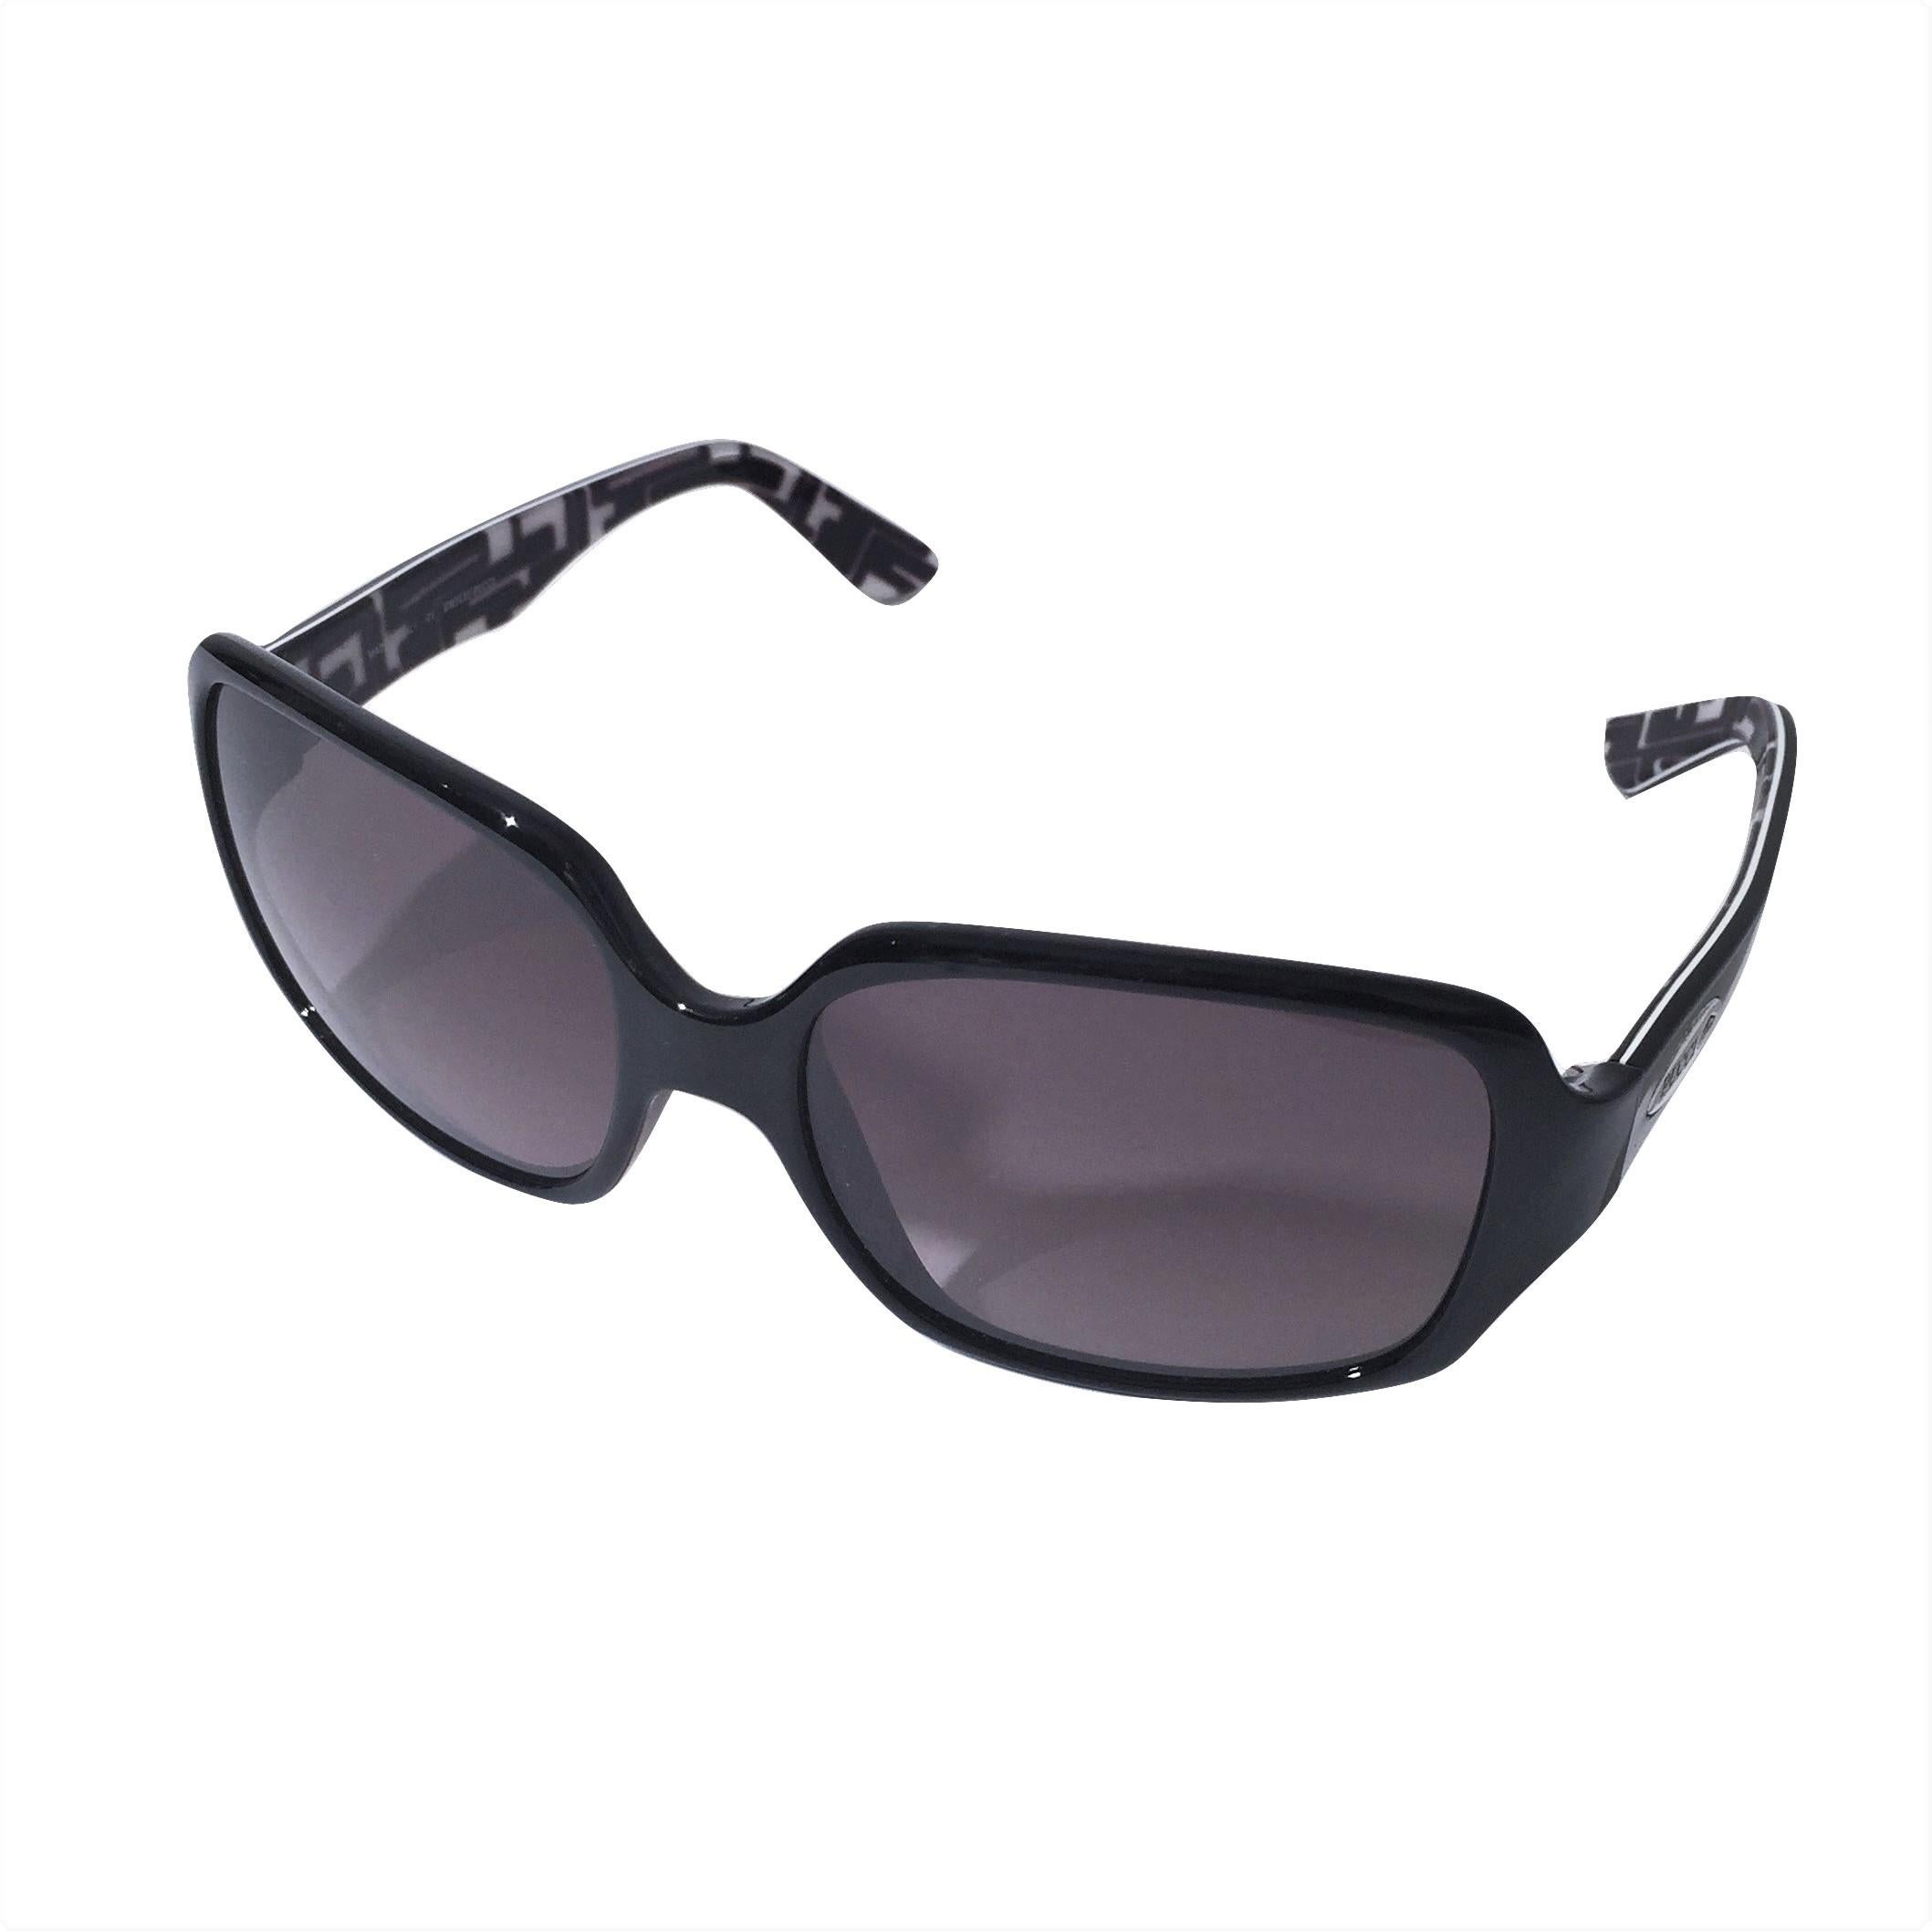 New Emilio Pucci Black Logo Sunglasses With Case & Box 3